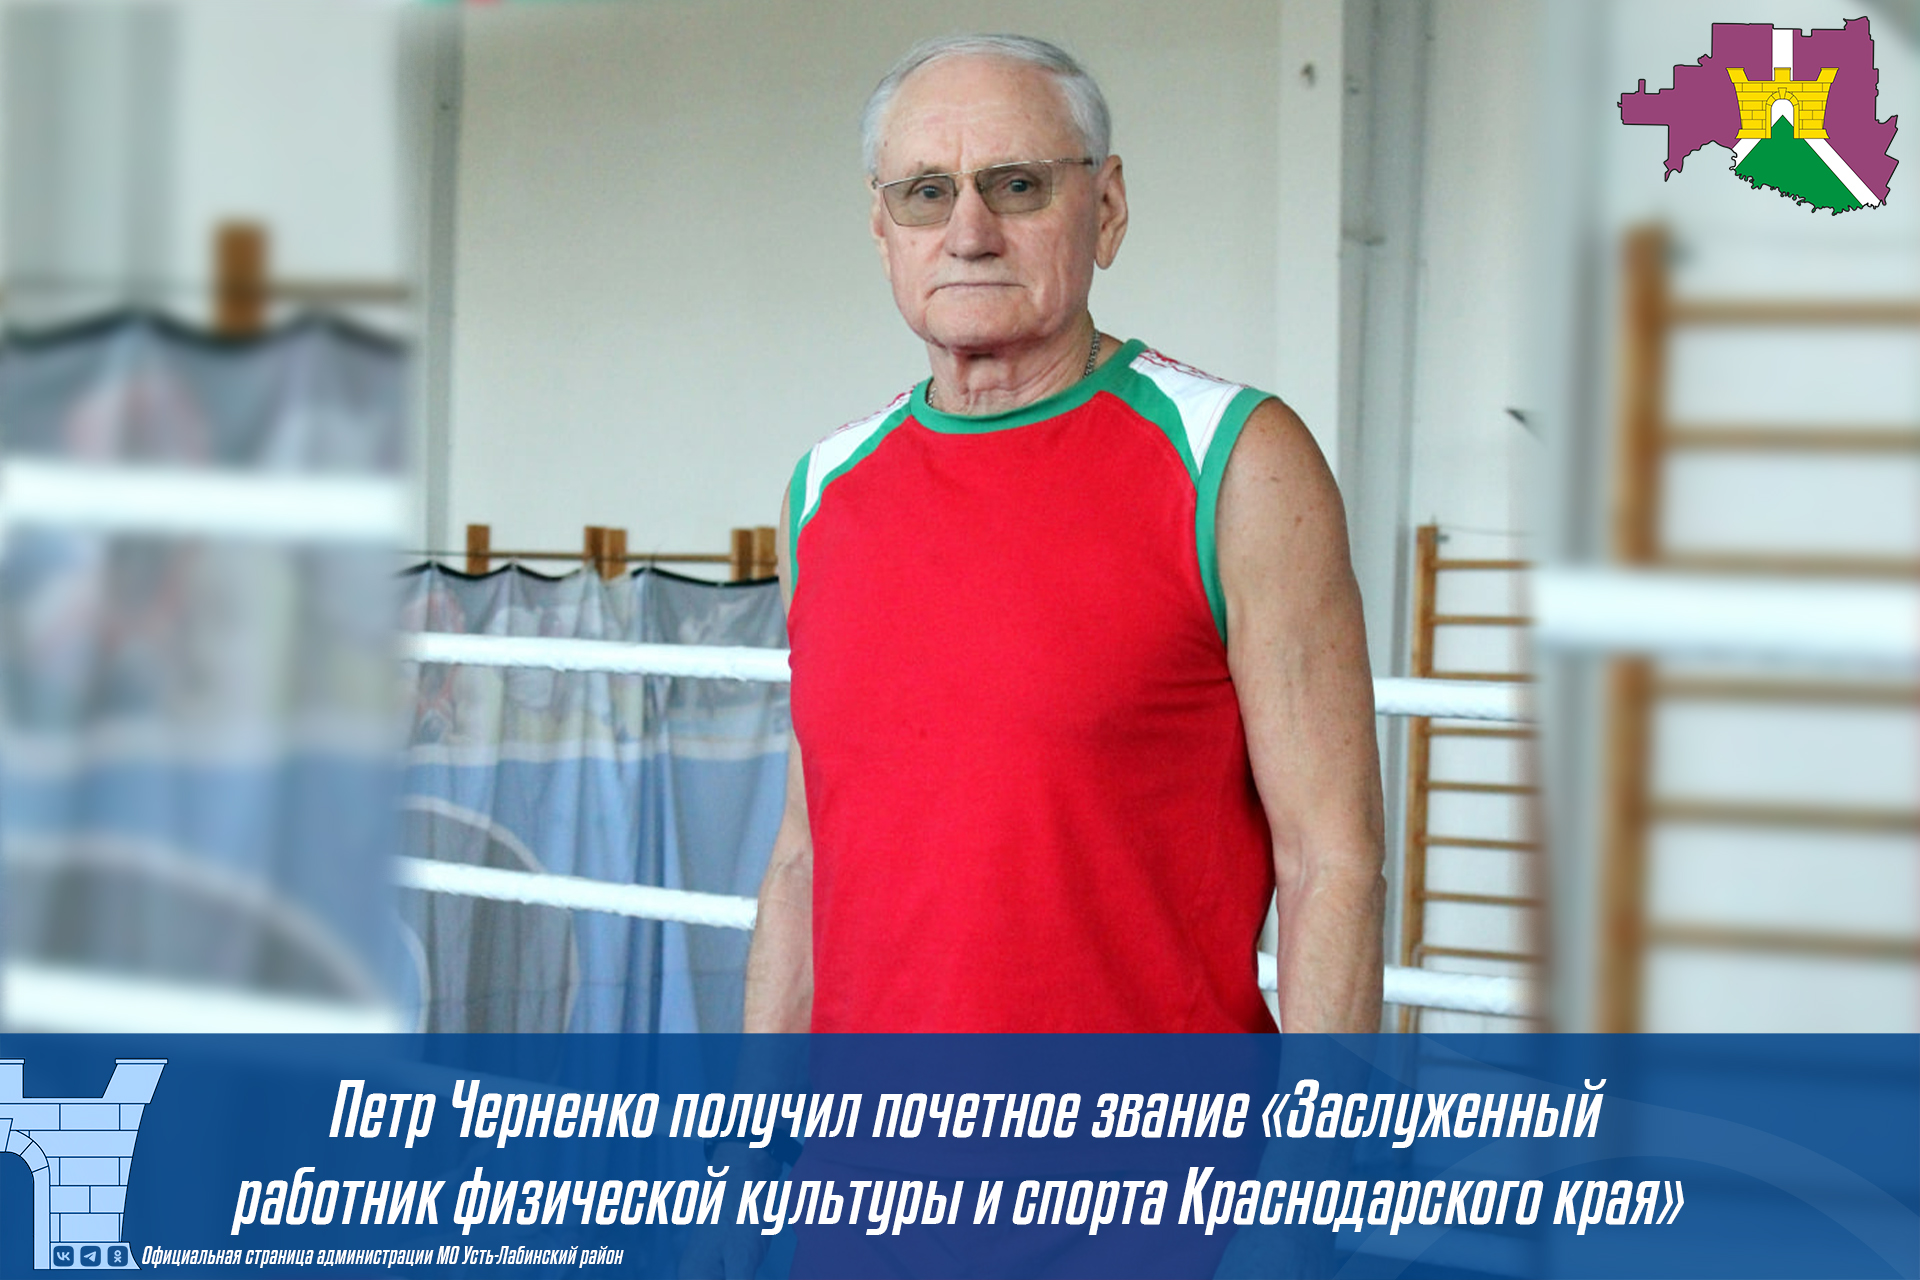  Петр Черненко получил почетное звание «Заслуженный работник физической культуры и спорта Краснодарского края»